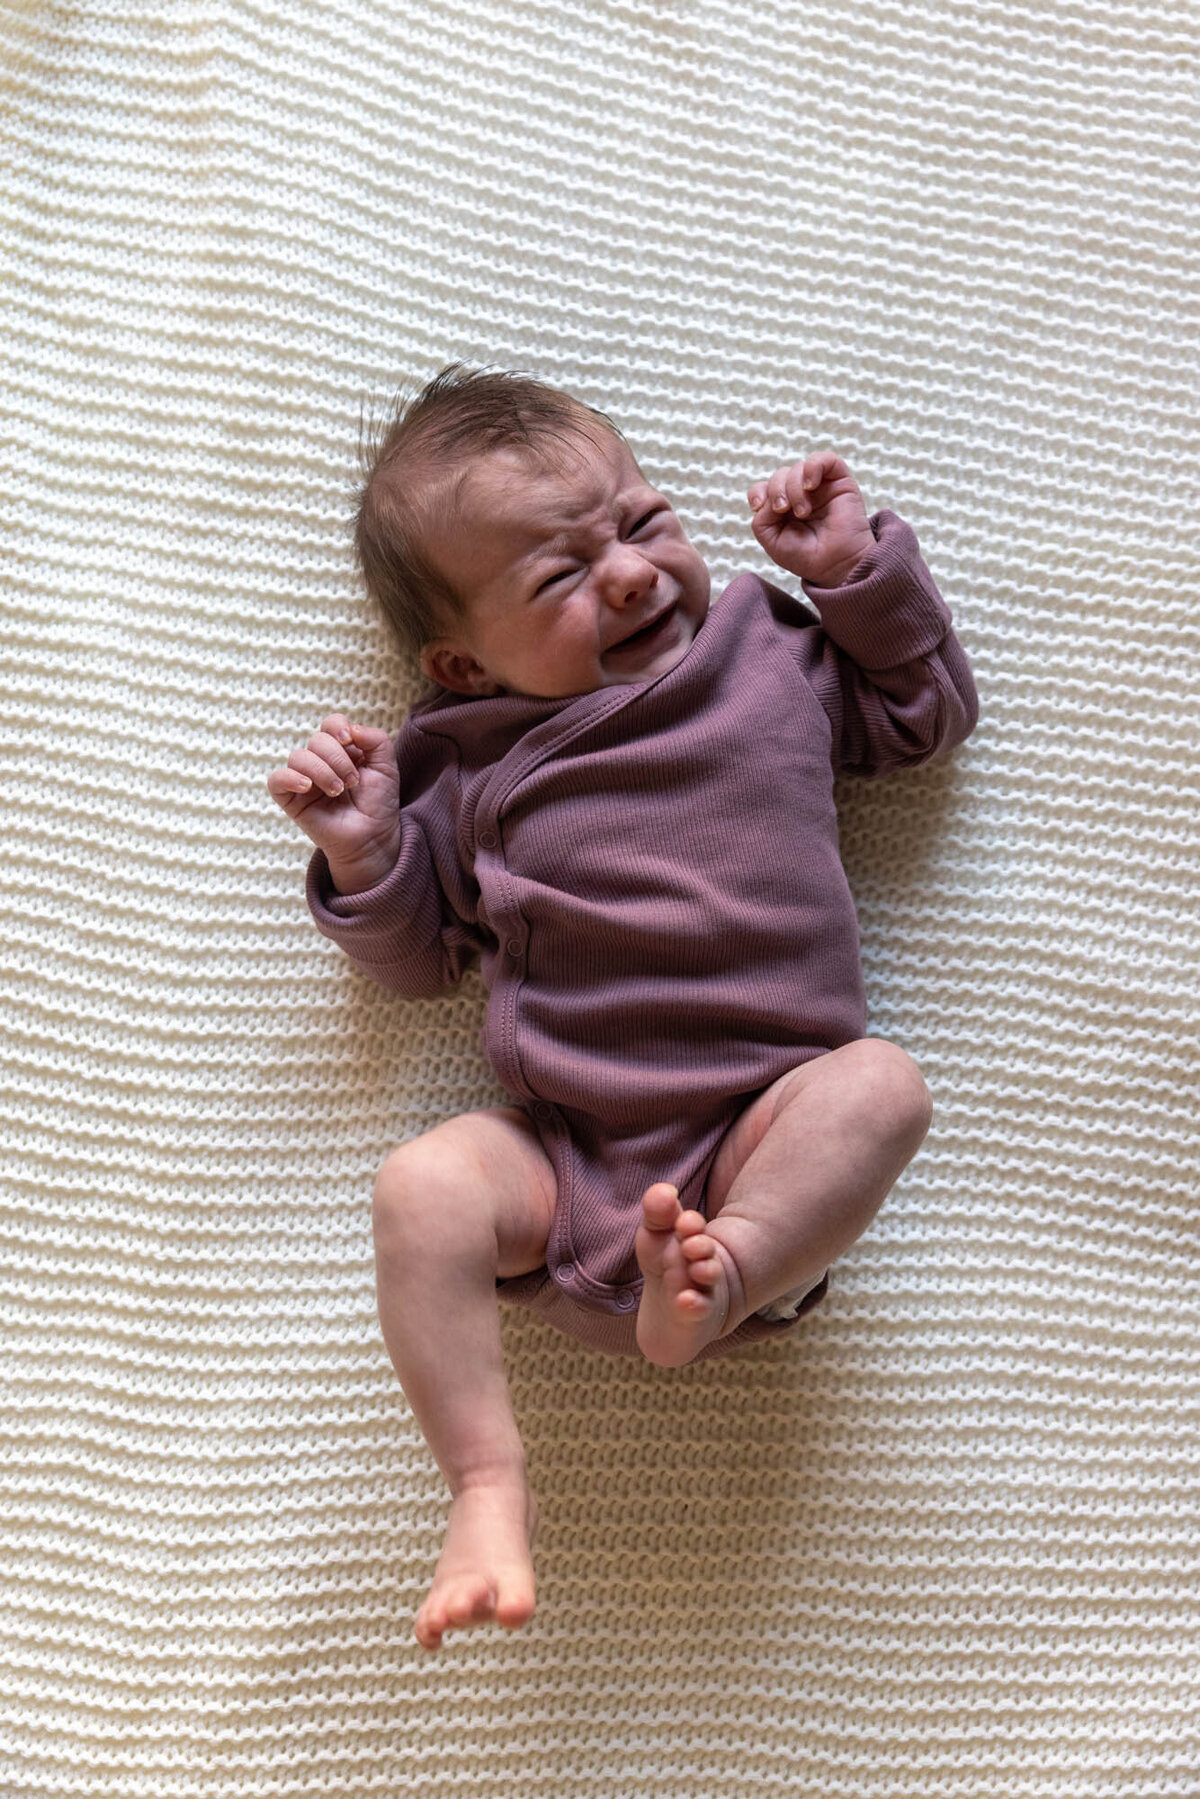 Foto av baby i lilla body som ligger på et strikket hvitt pledd. Babyen gråter og spreller.